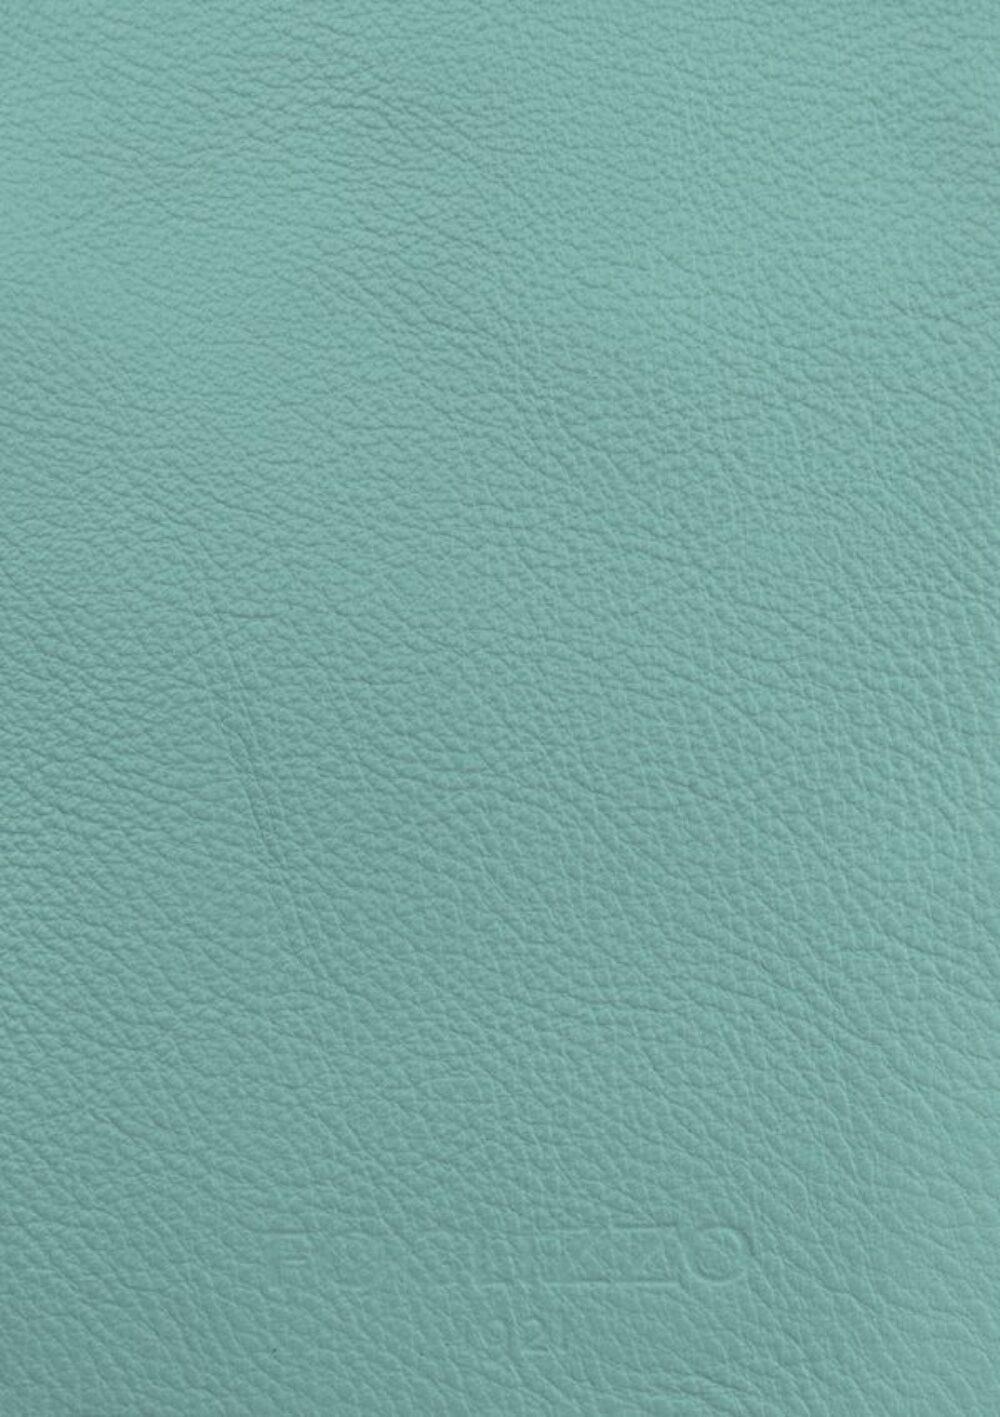 Diseño de lujo y alfombras de alta gama hechas a medida • Marine Blue Green Jade